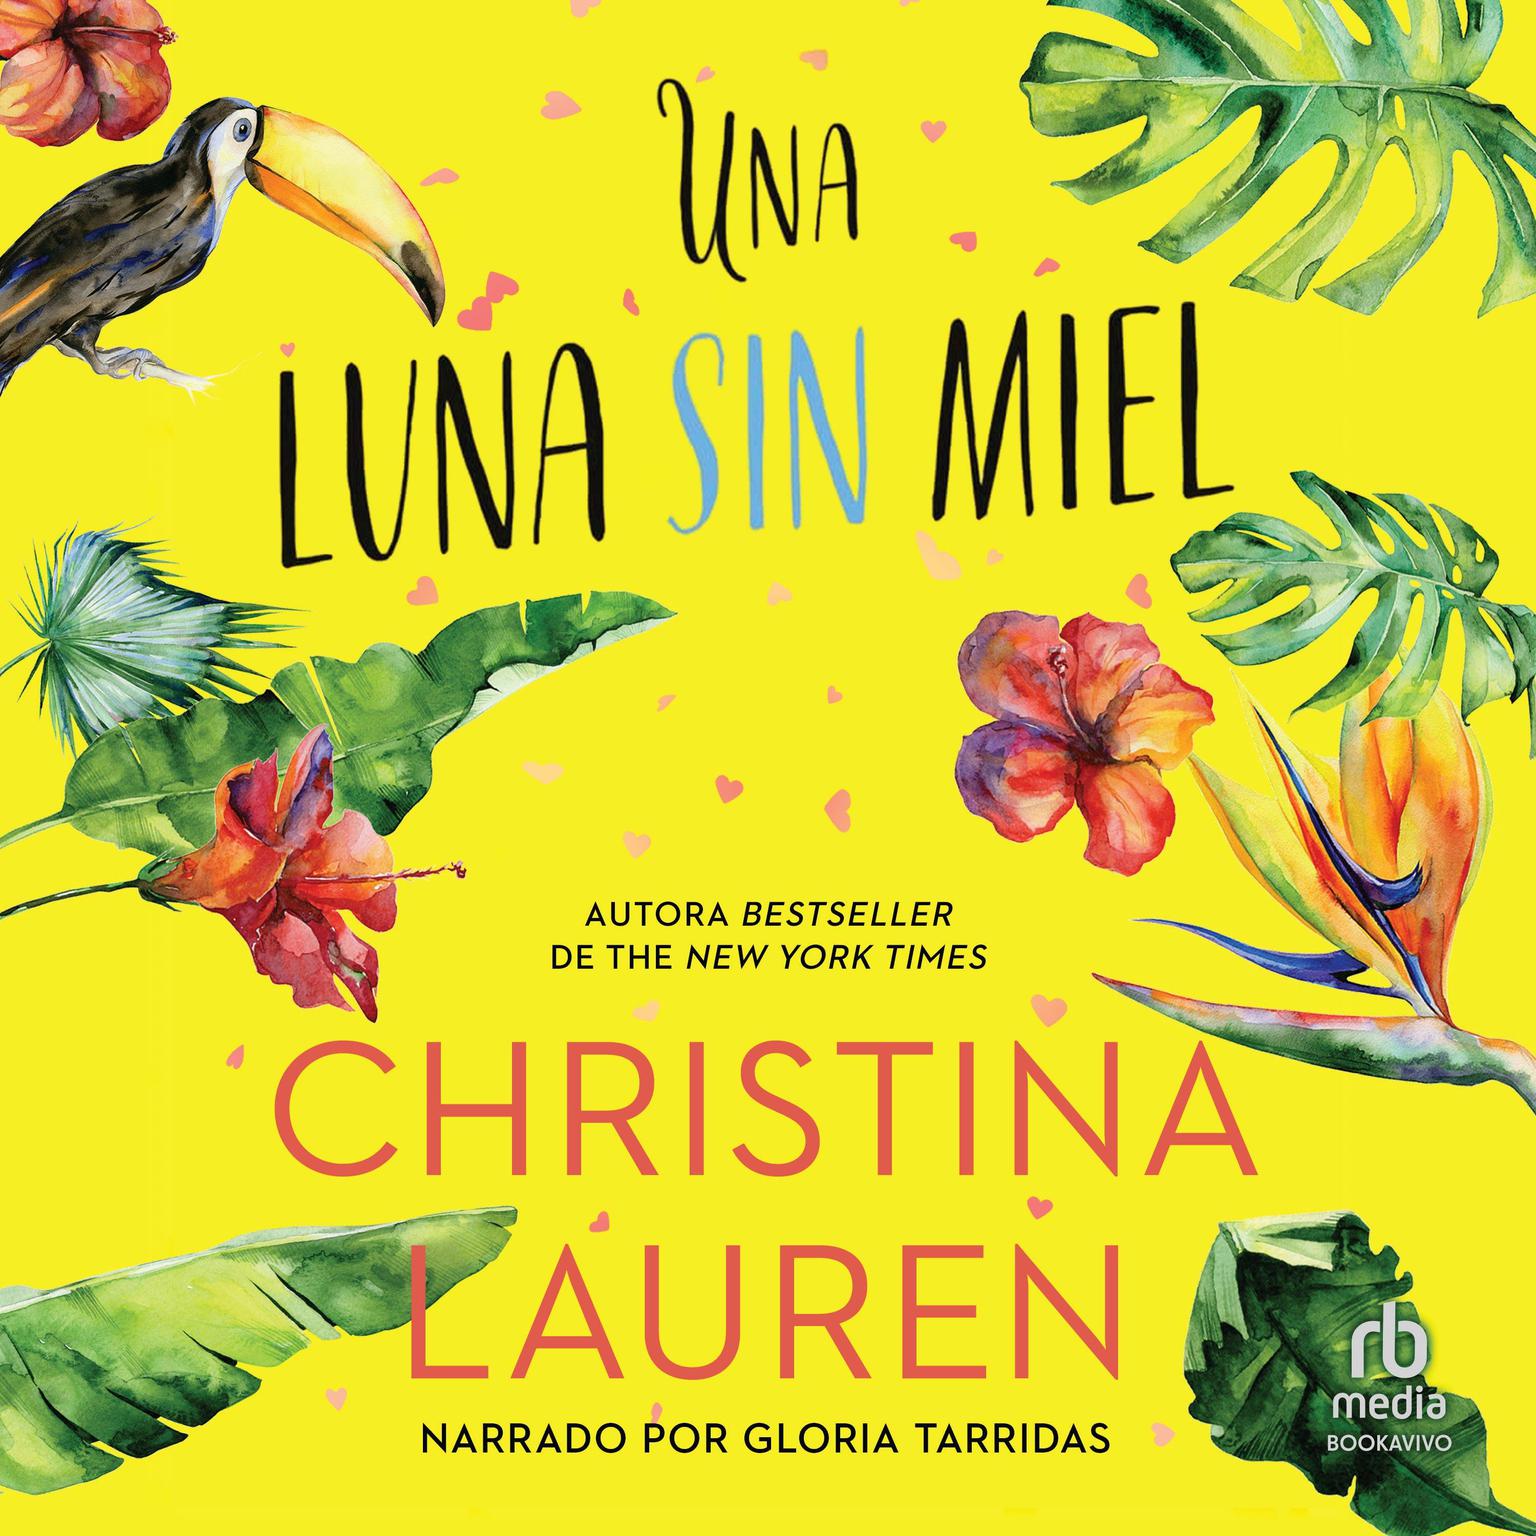 Una luna sin miel (The Unhoneymooners) Audiobook, by Christina Lauren